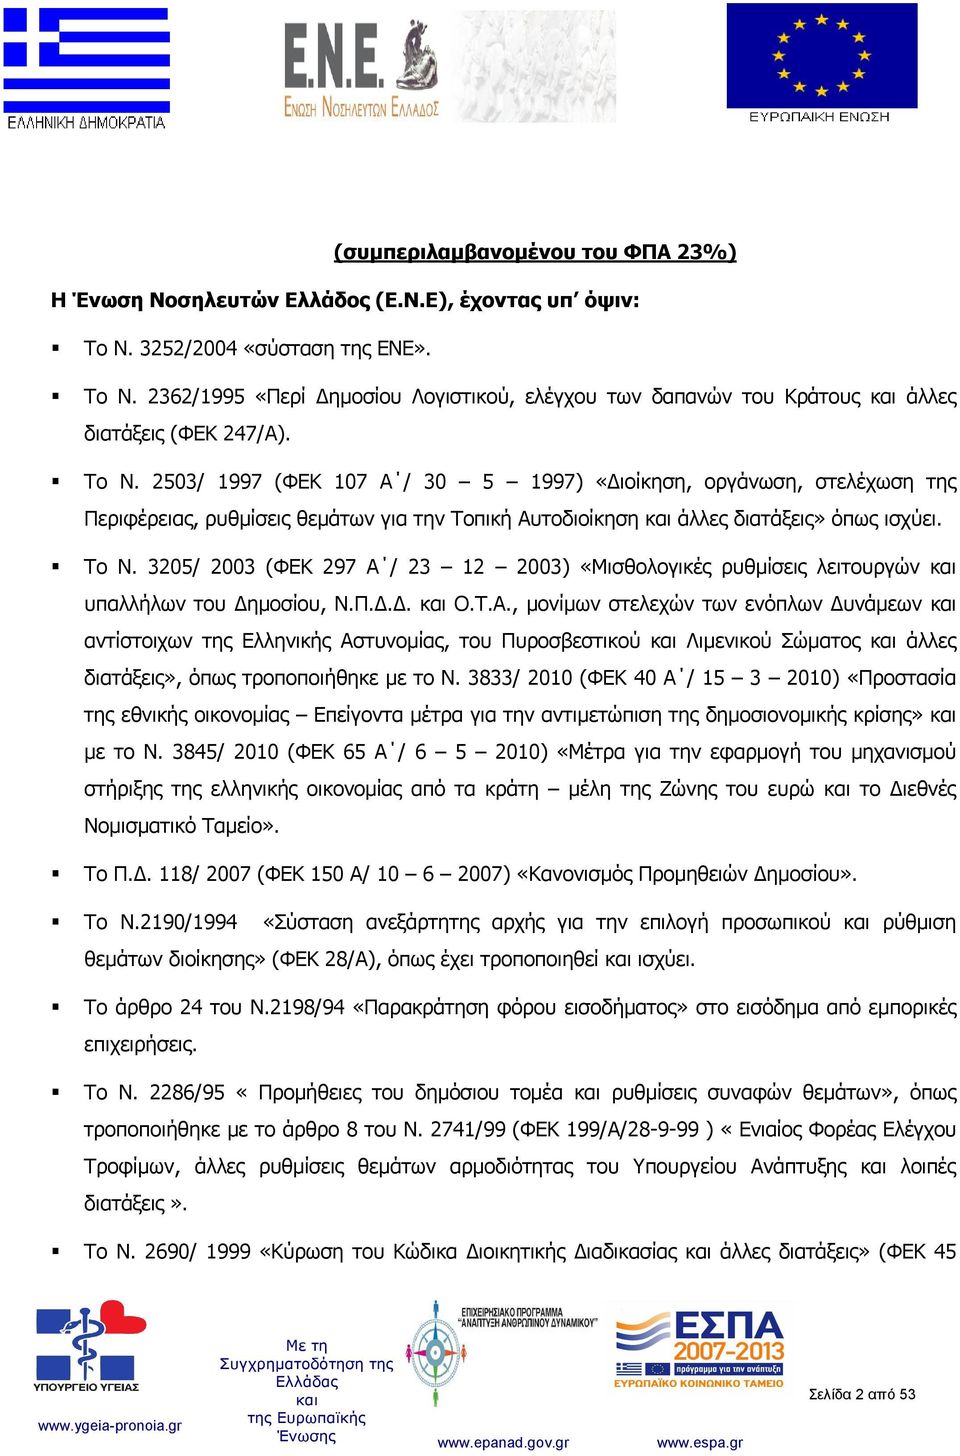 3205/ 2003 (ΦΕΚ 297 Α / 23 12 2003) «Μισθολογικές ρυθμίσεις λειτουργών υπαλλήλων του Δημοσίου, Ν.Π.Δ.Δ. Ο.Τ.Α., μονίμων στελεχών των ενόπλων Δυνάμεων αντίστοιχων της Ελληνικής Αστυνομίας, του Πυροσβεστικού Λιμενικού Σώματος άλλες διατάξεις», όπως τροποποιήθηκε με το Ν.